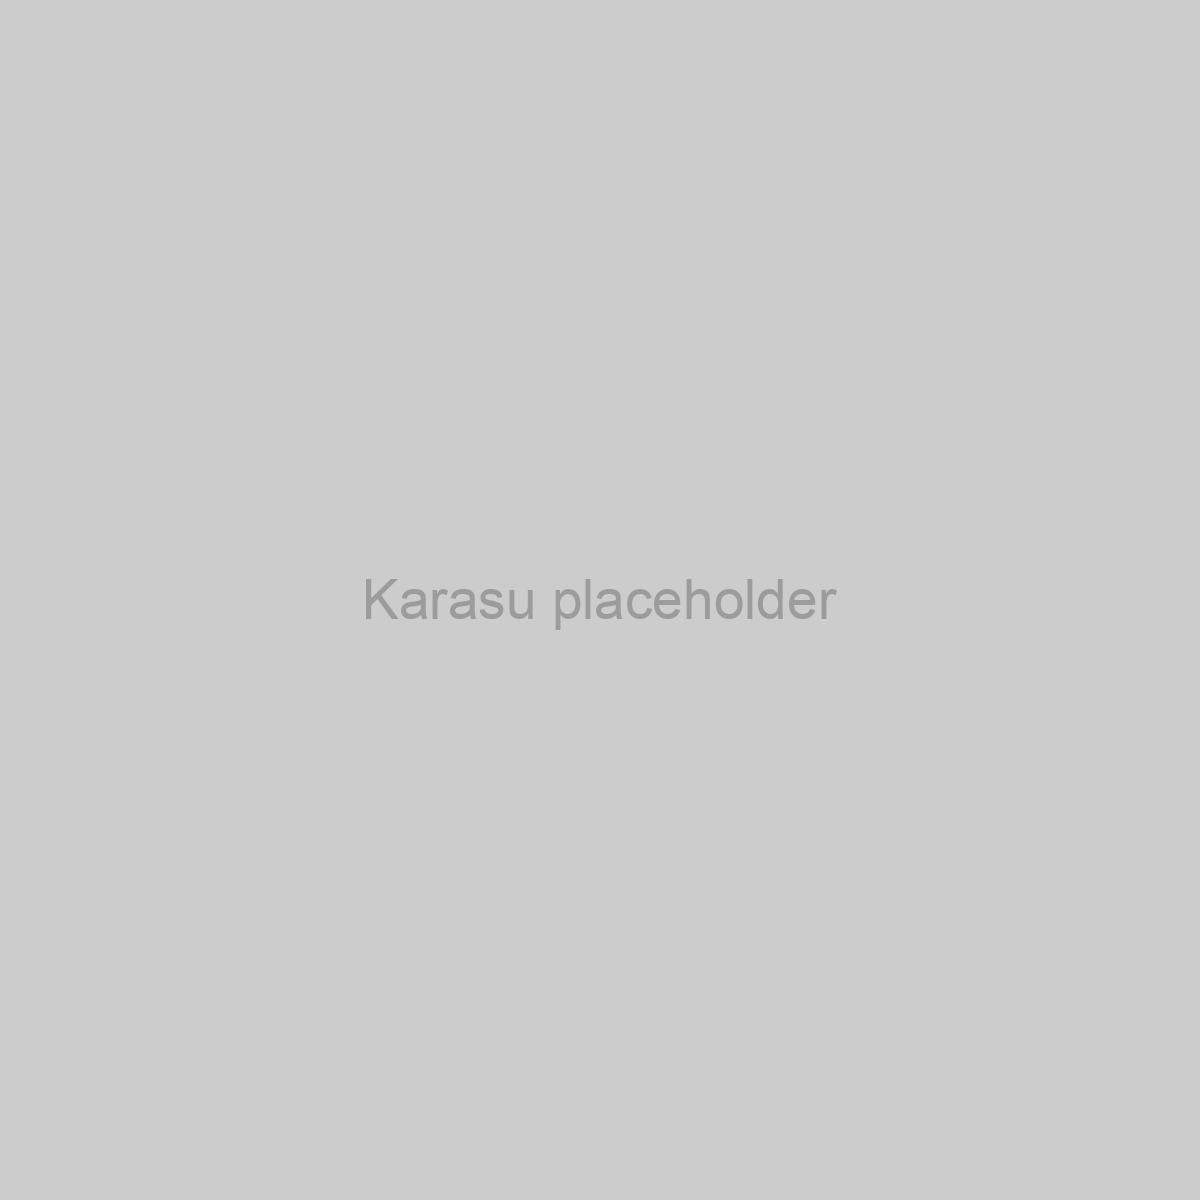 Karasu Placeholder Image